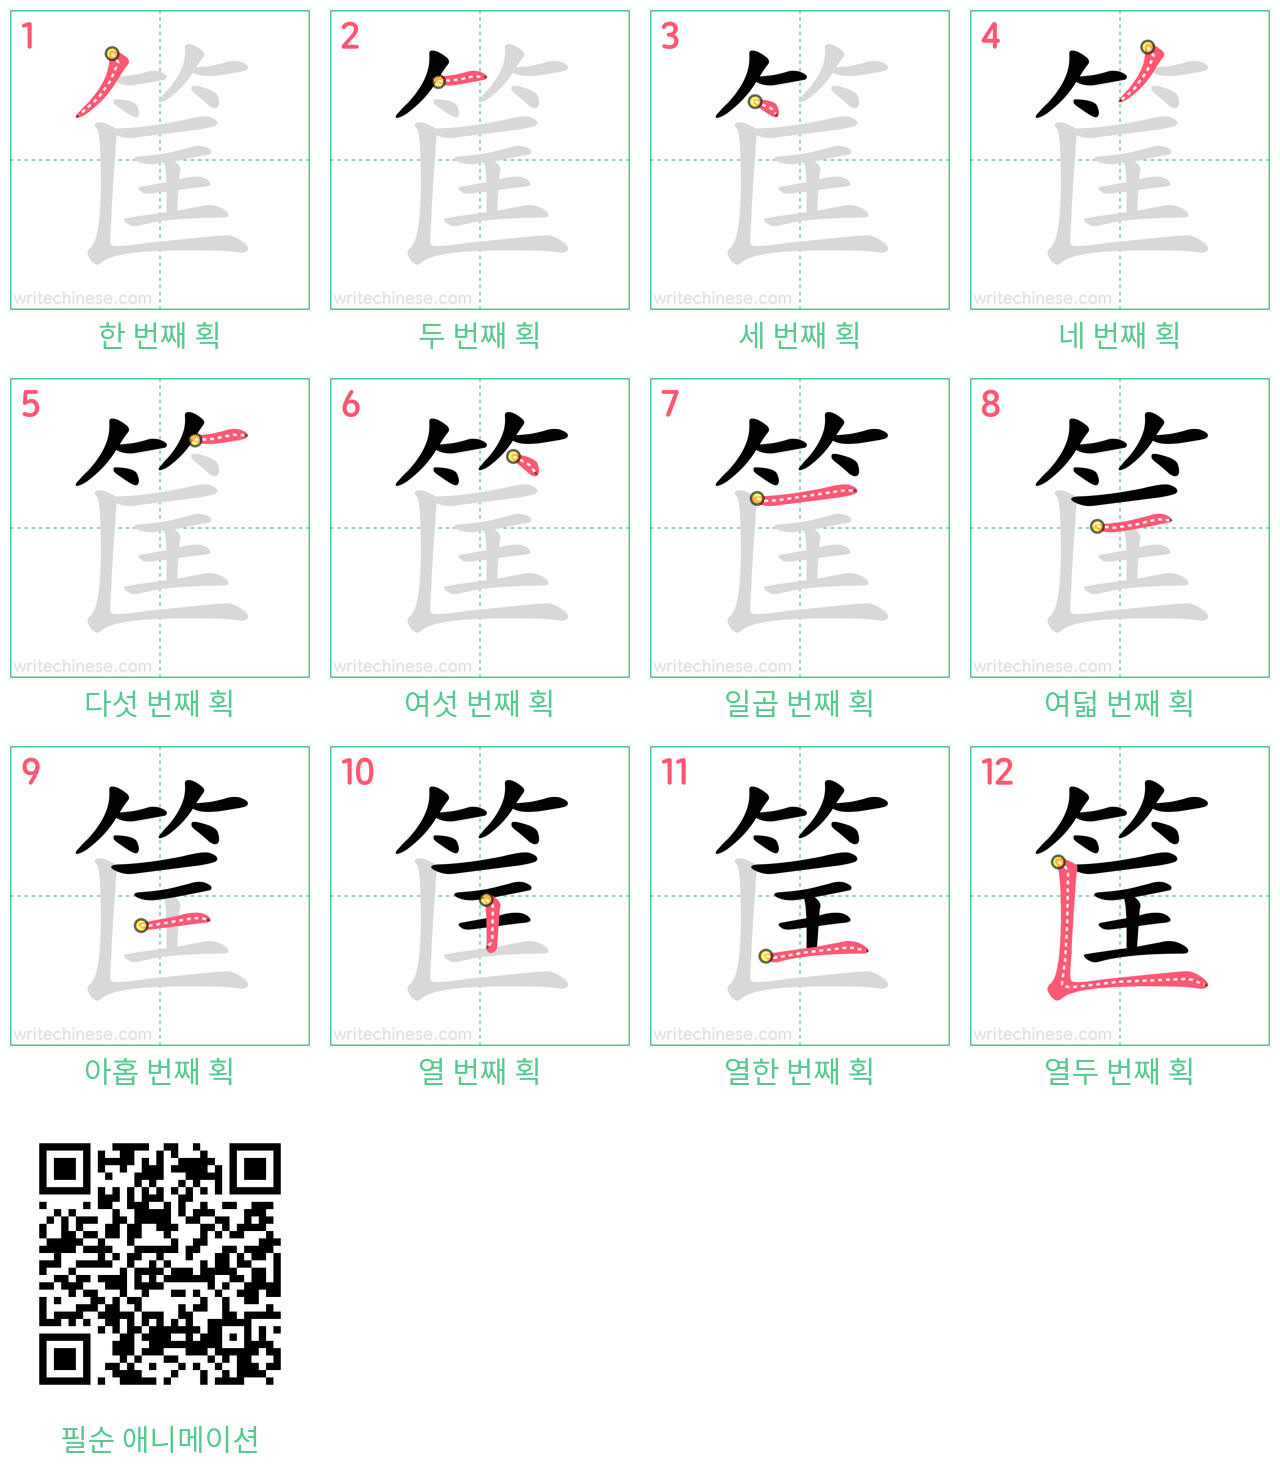 筐 step-by-step stroke order diagrams